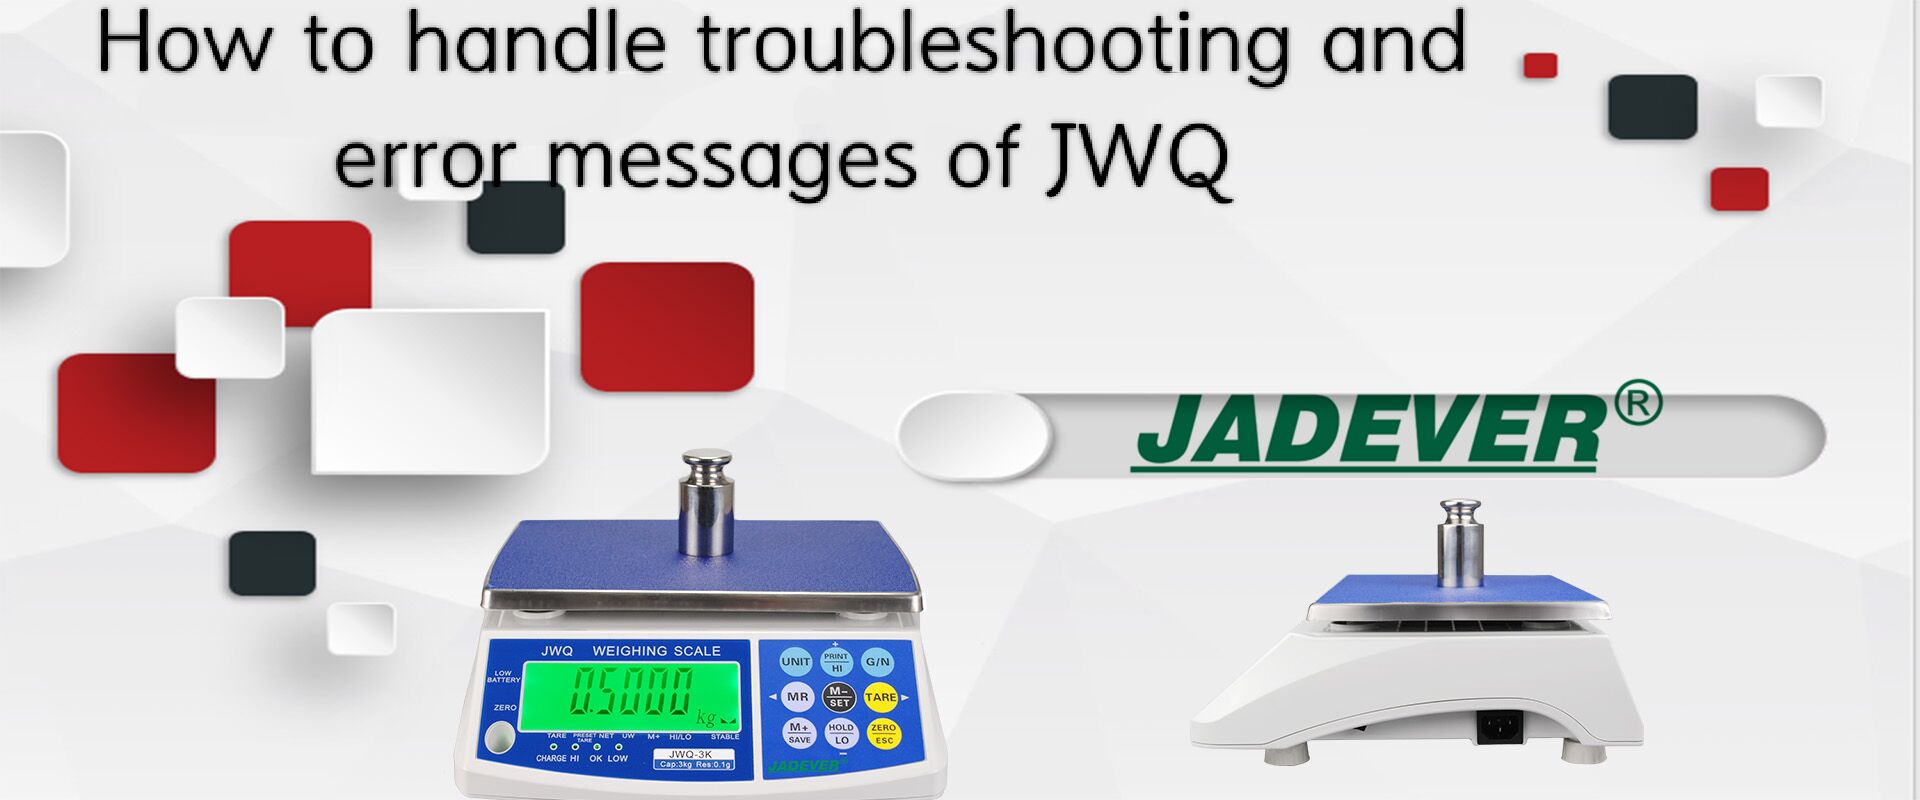 ¿Cómo manejar la solución de problemas y los mensajes de error de JWQ?
